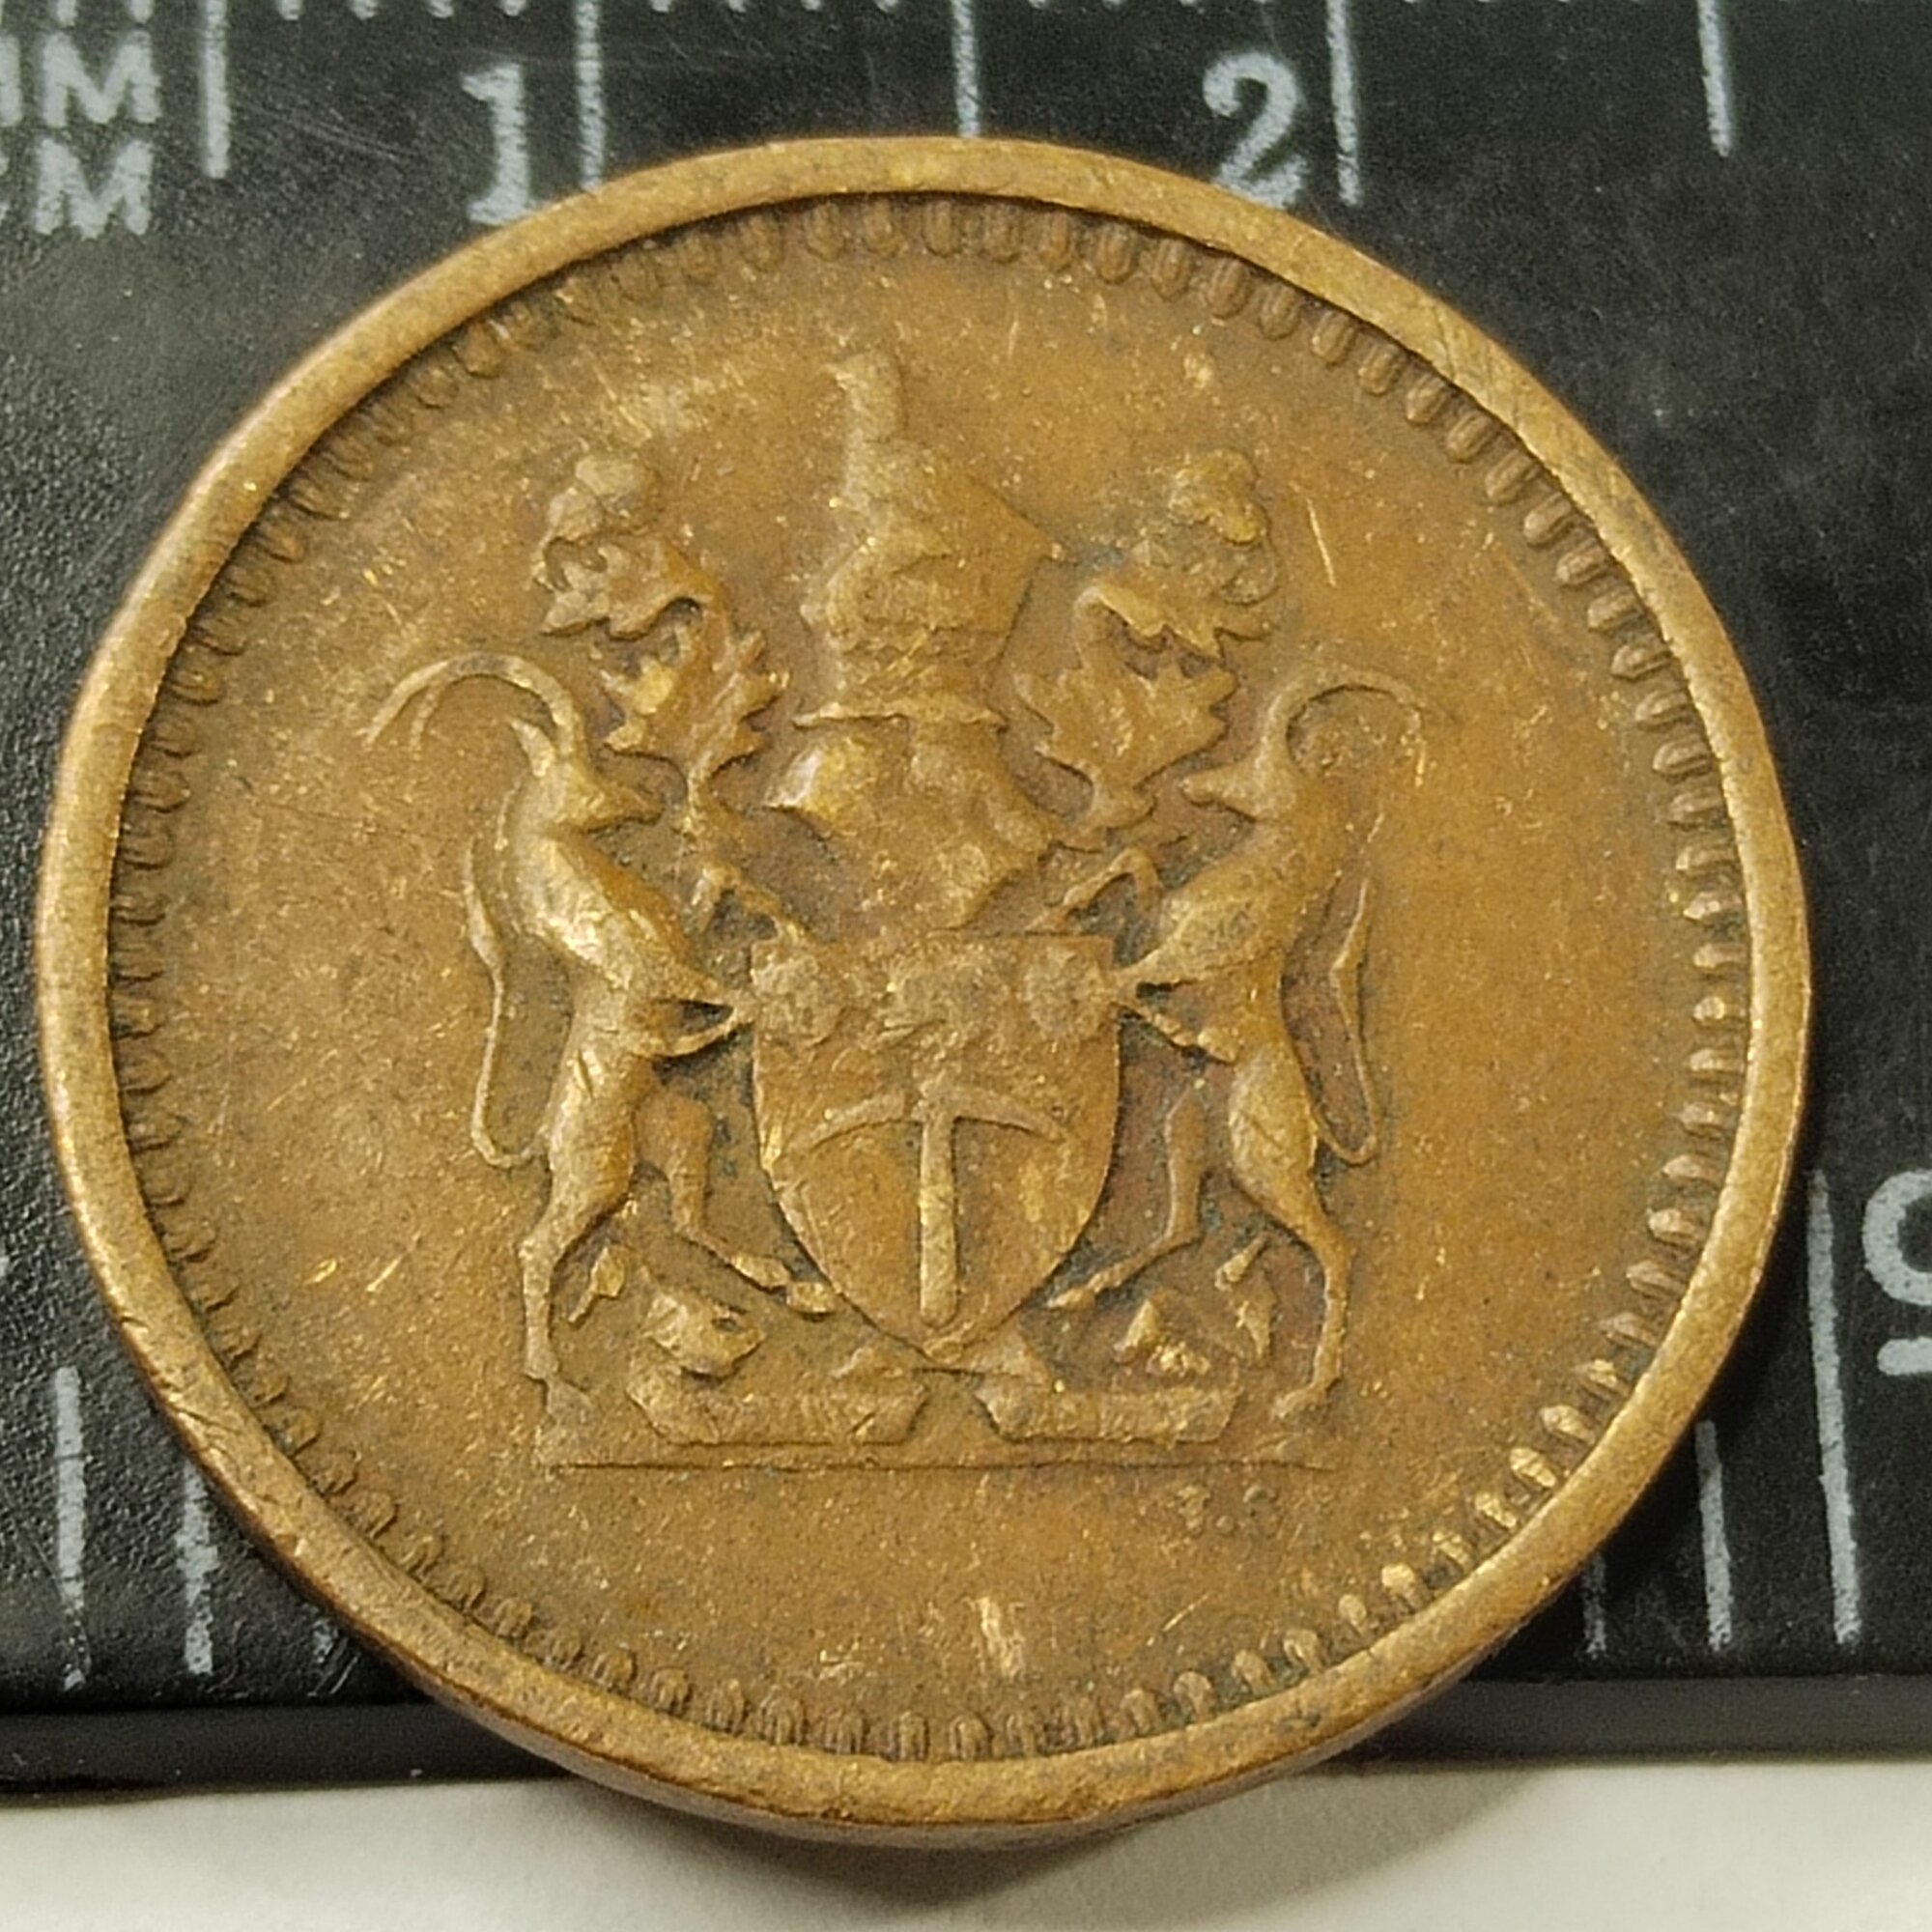 Родезия 1 цент 1970. Королева Елизавета II. Из обращения.